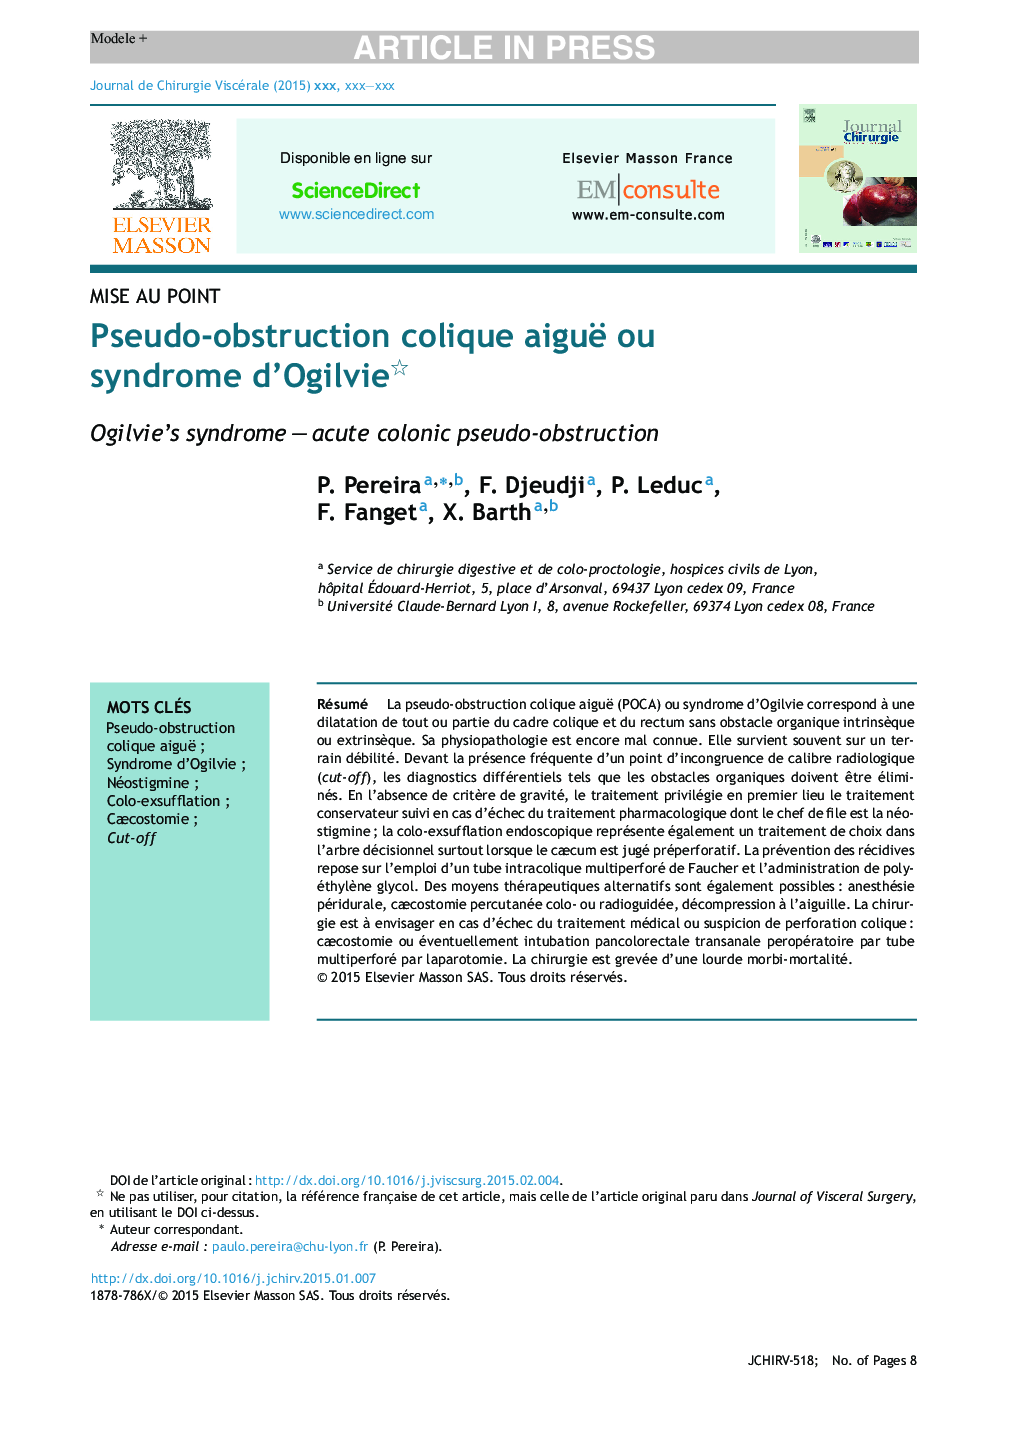 Pseudo-obstruction colique aiguë ou syndrome d'Ogilvie